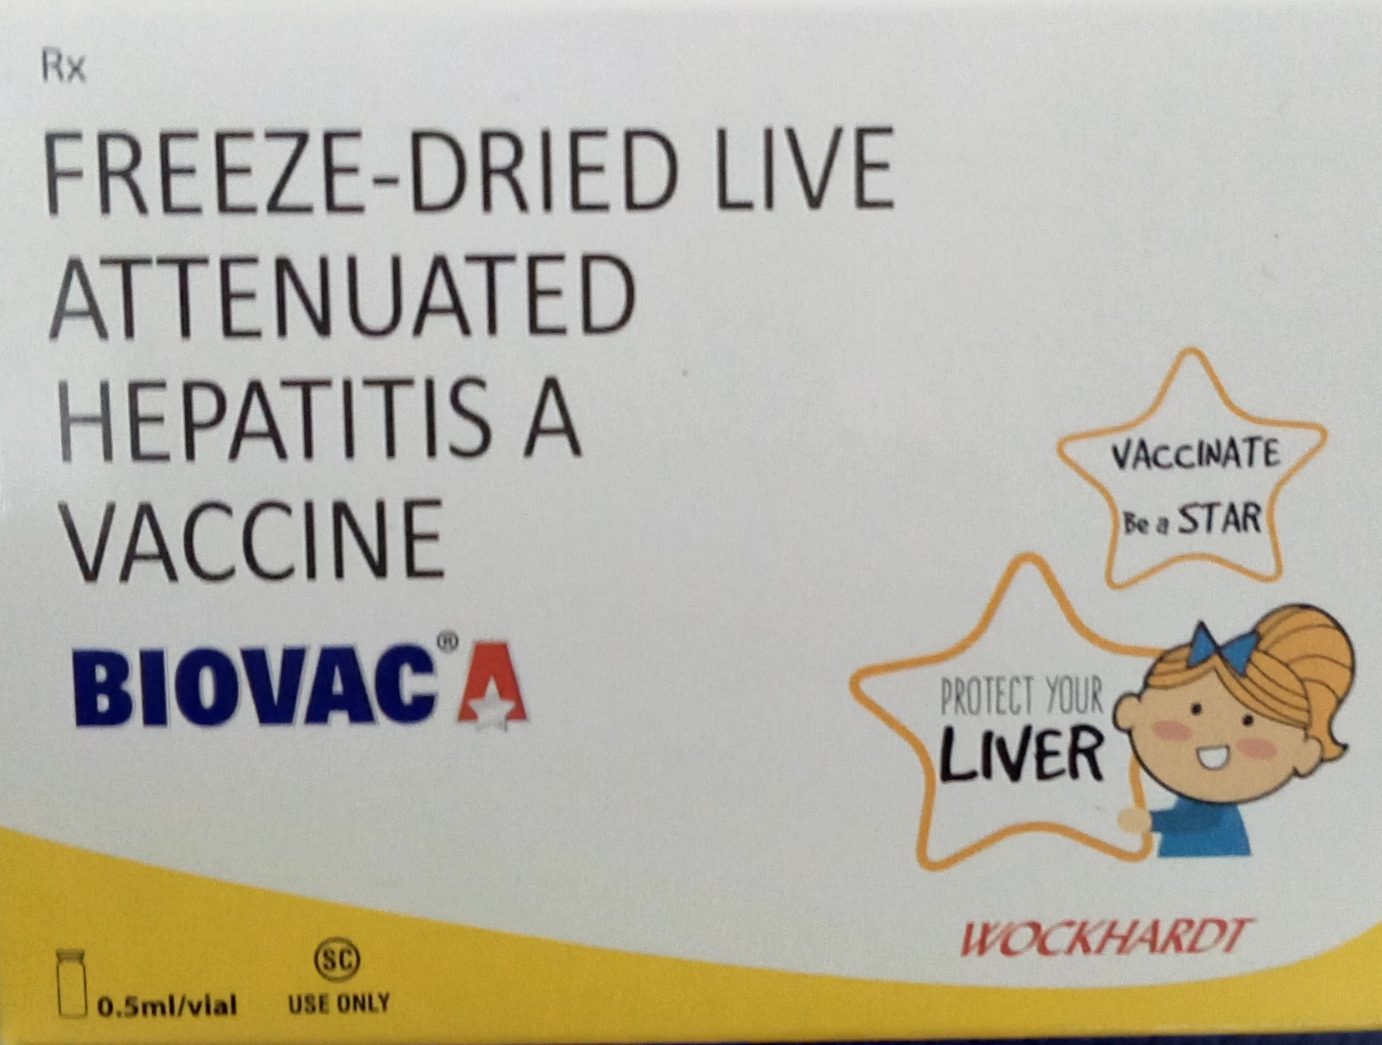 Biovac A vaccine